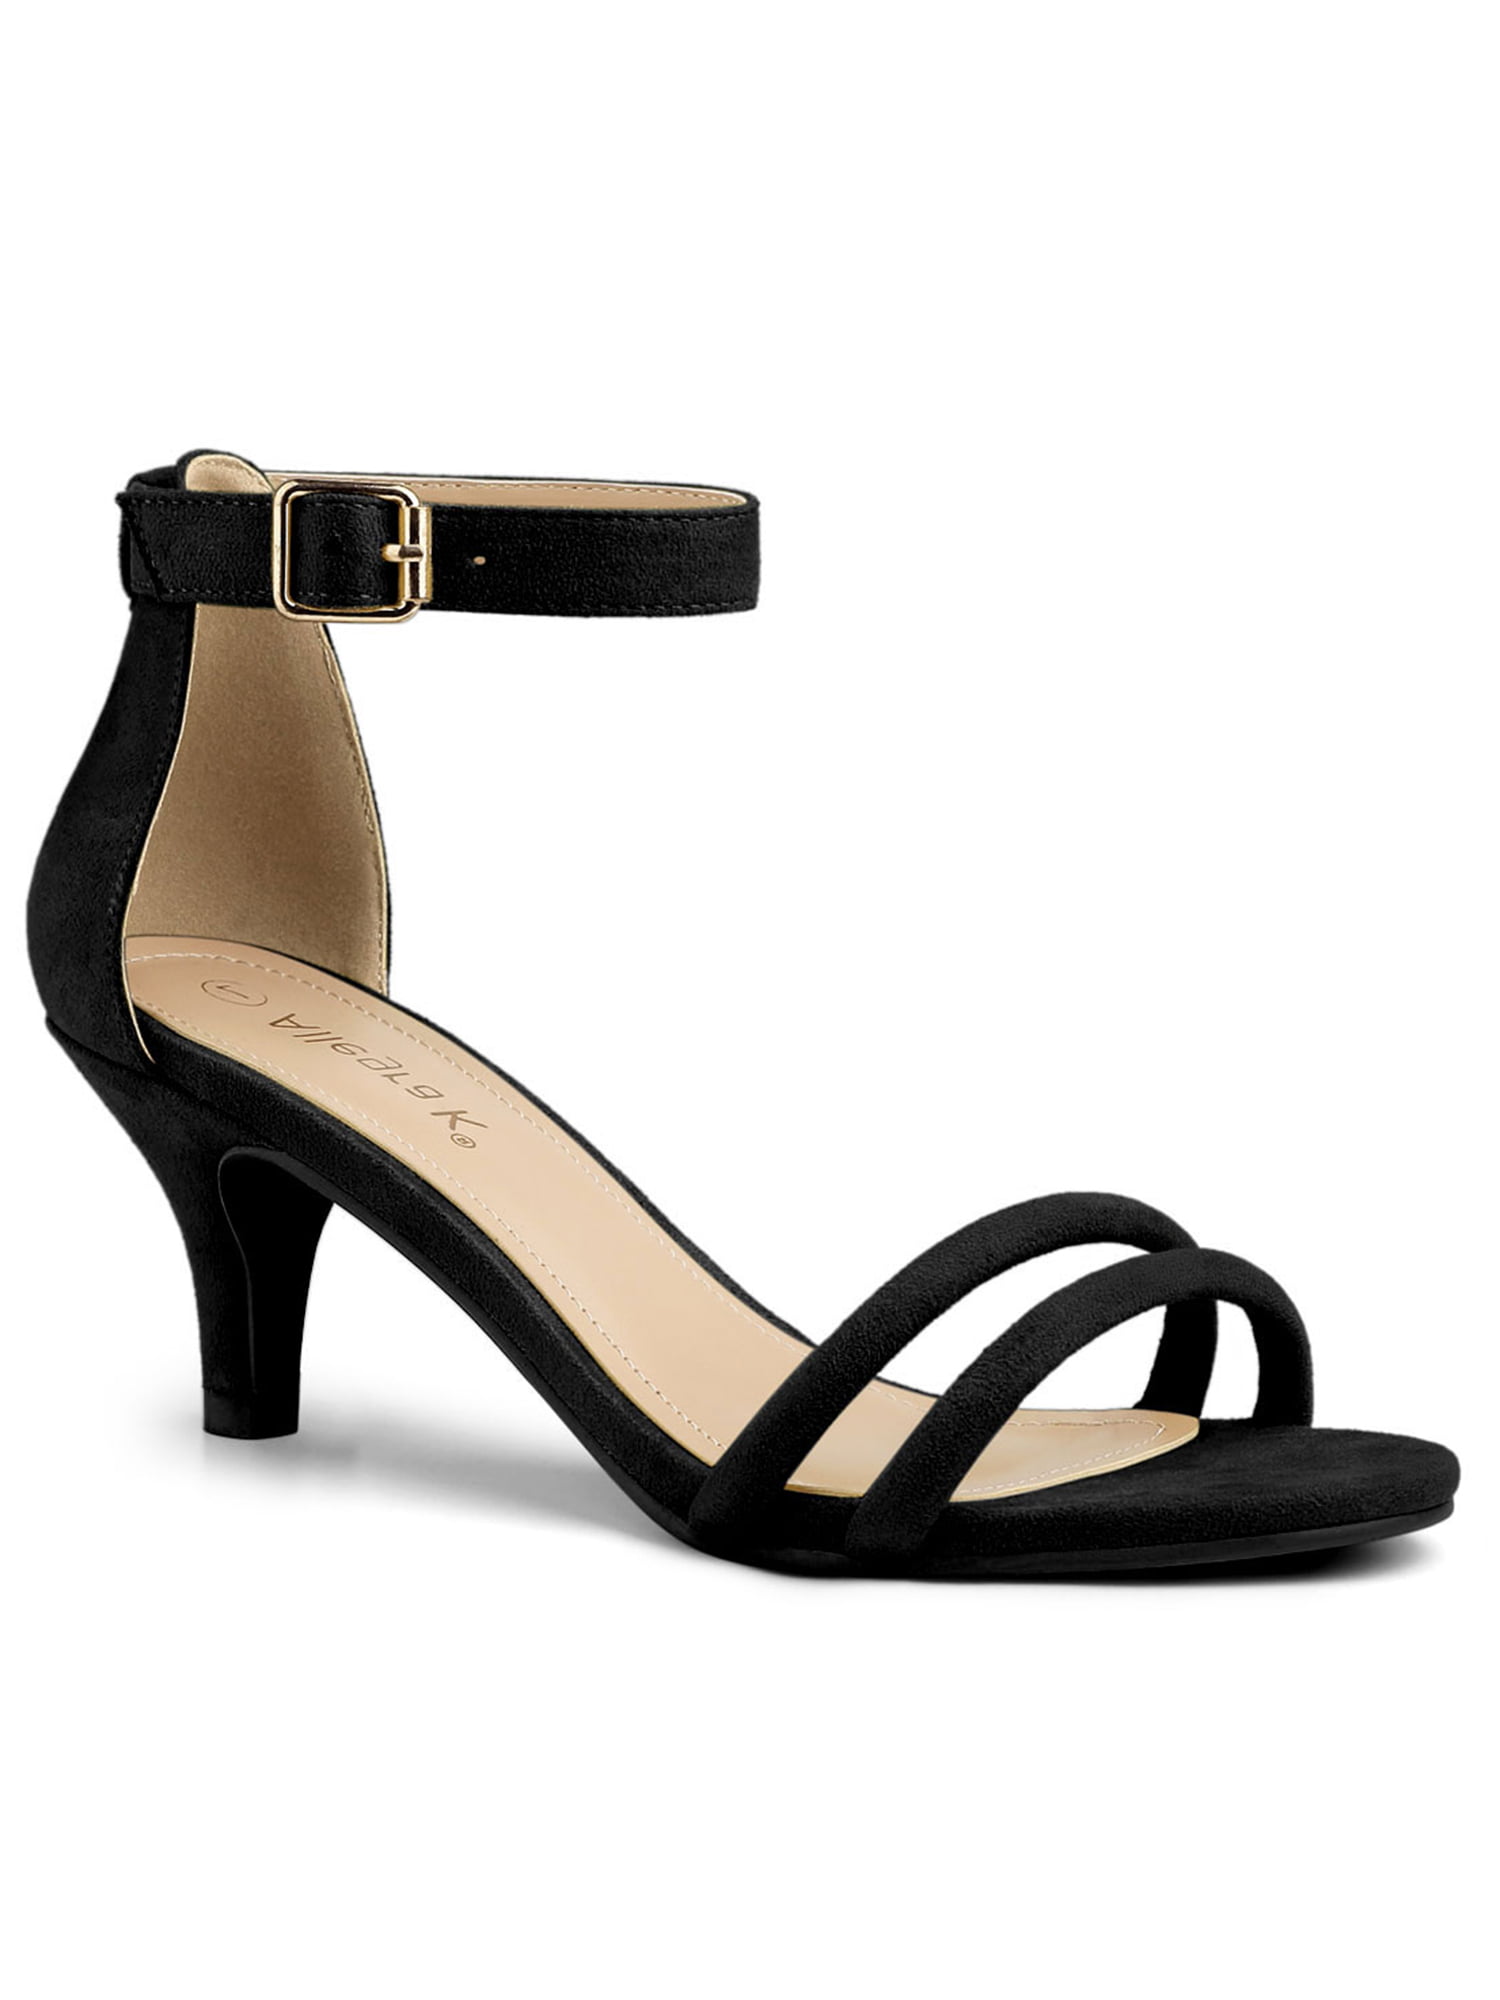 Unique Bargains - Women's Kitten Heel Ankle Strap Sandals Shoes Black ...